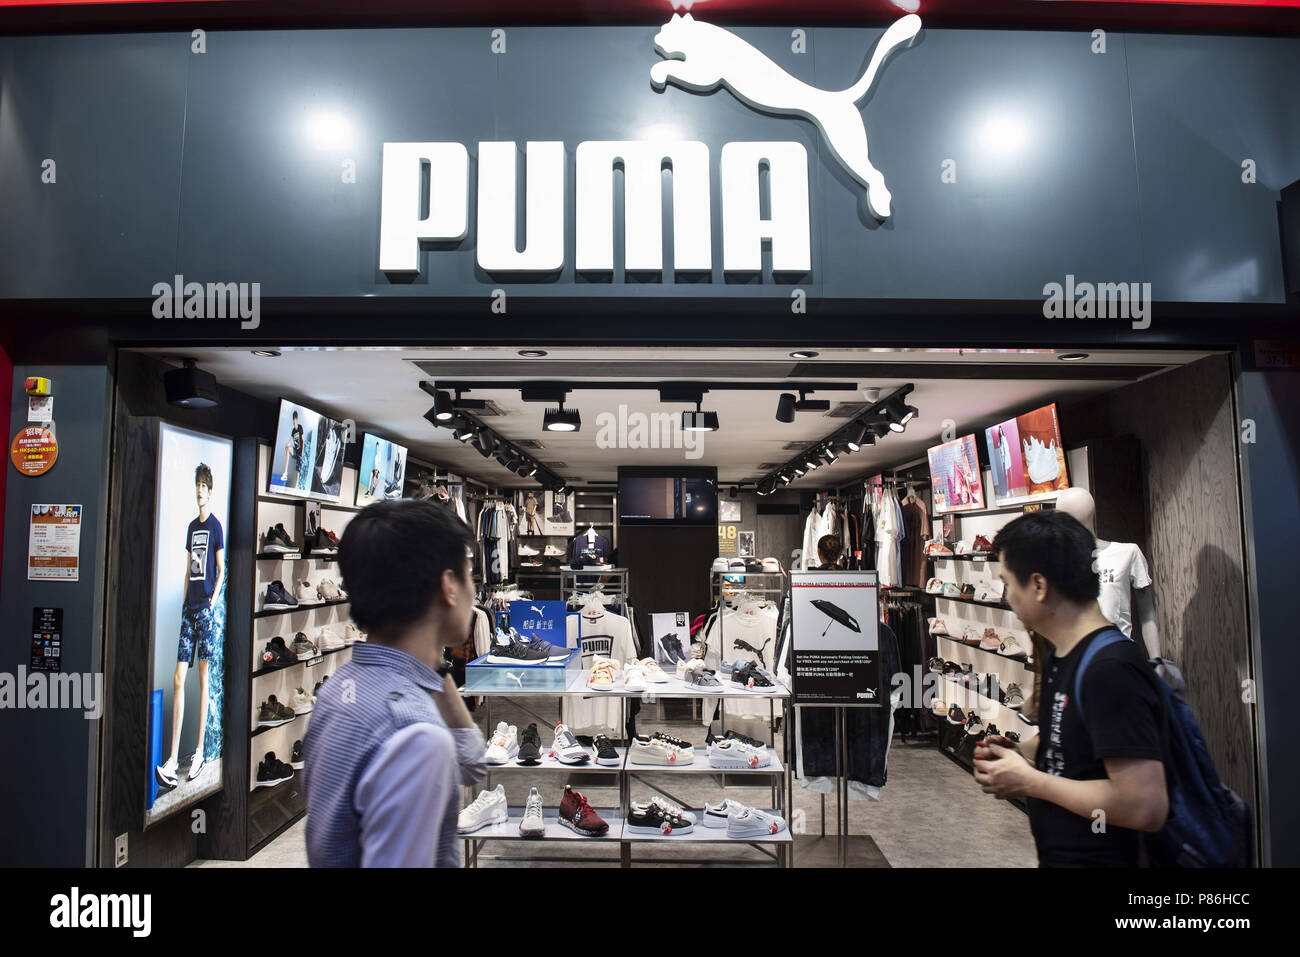 puma brand shop